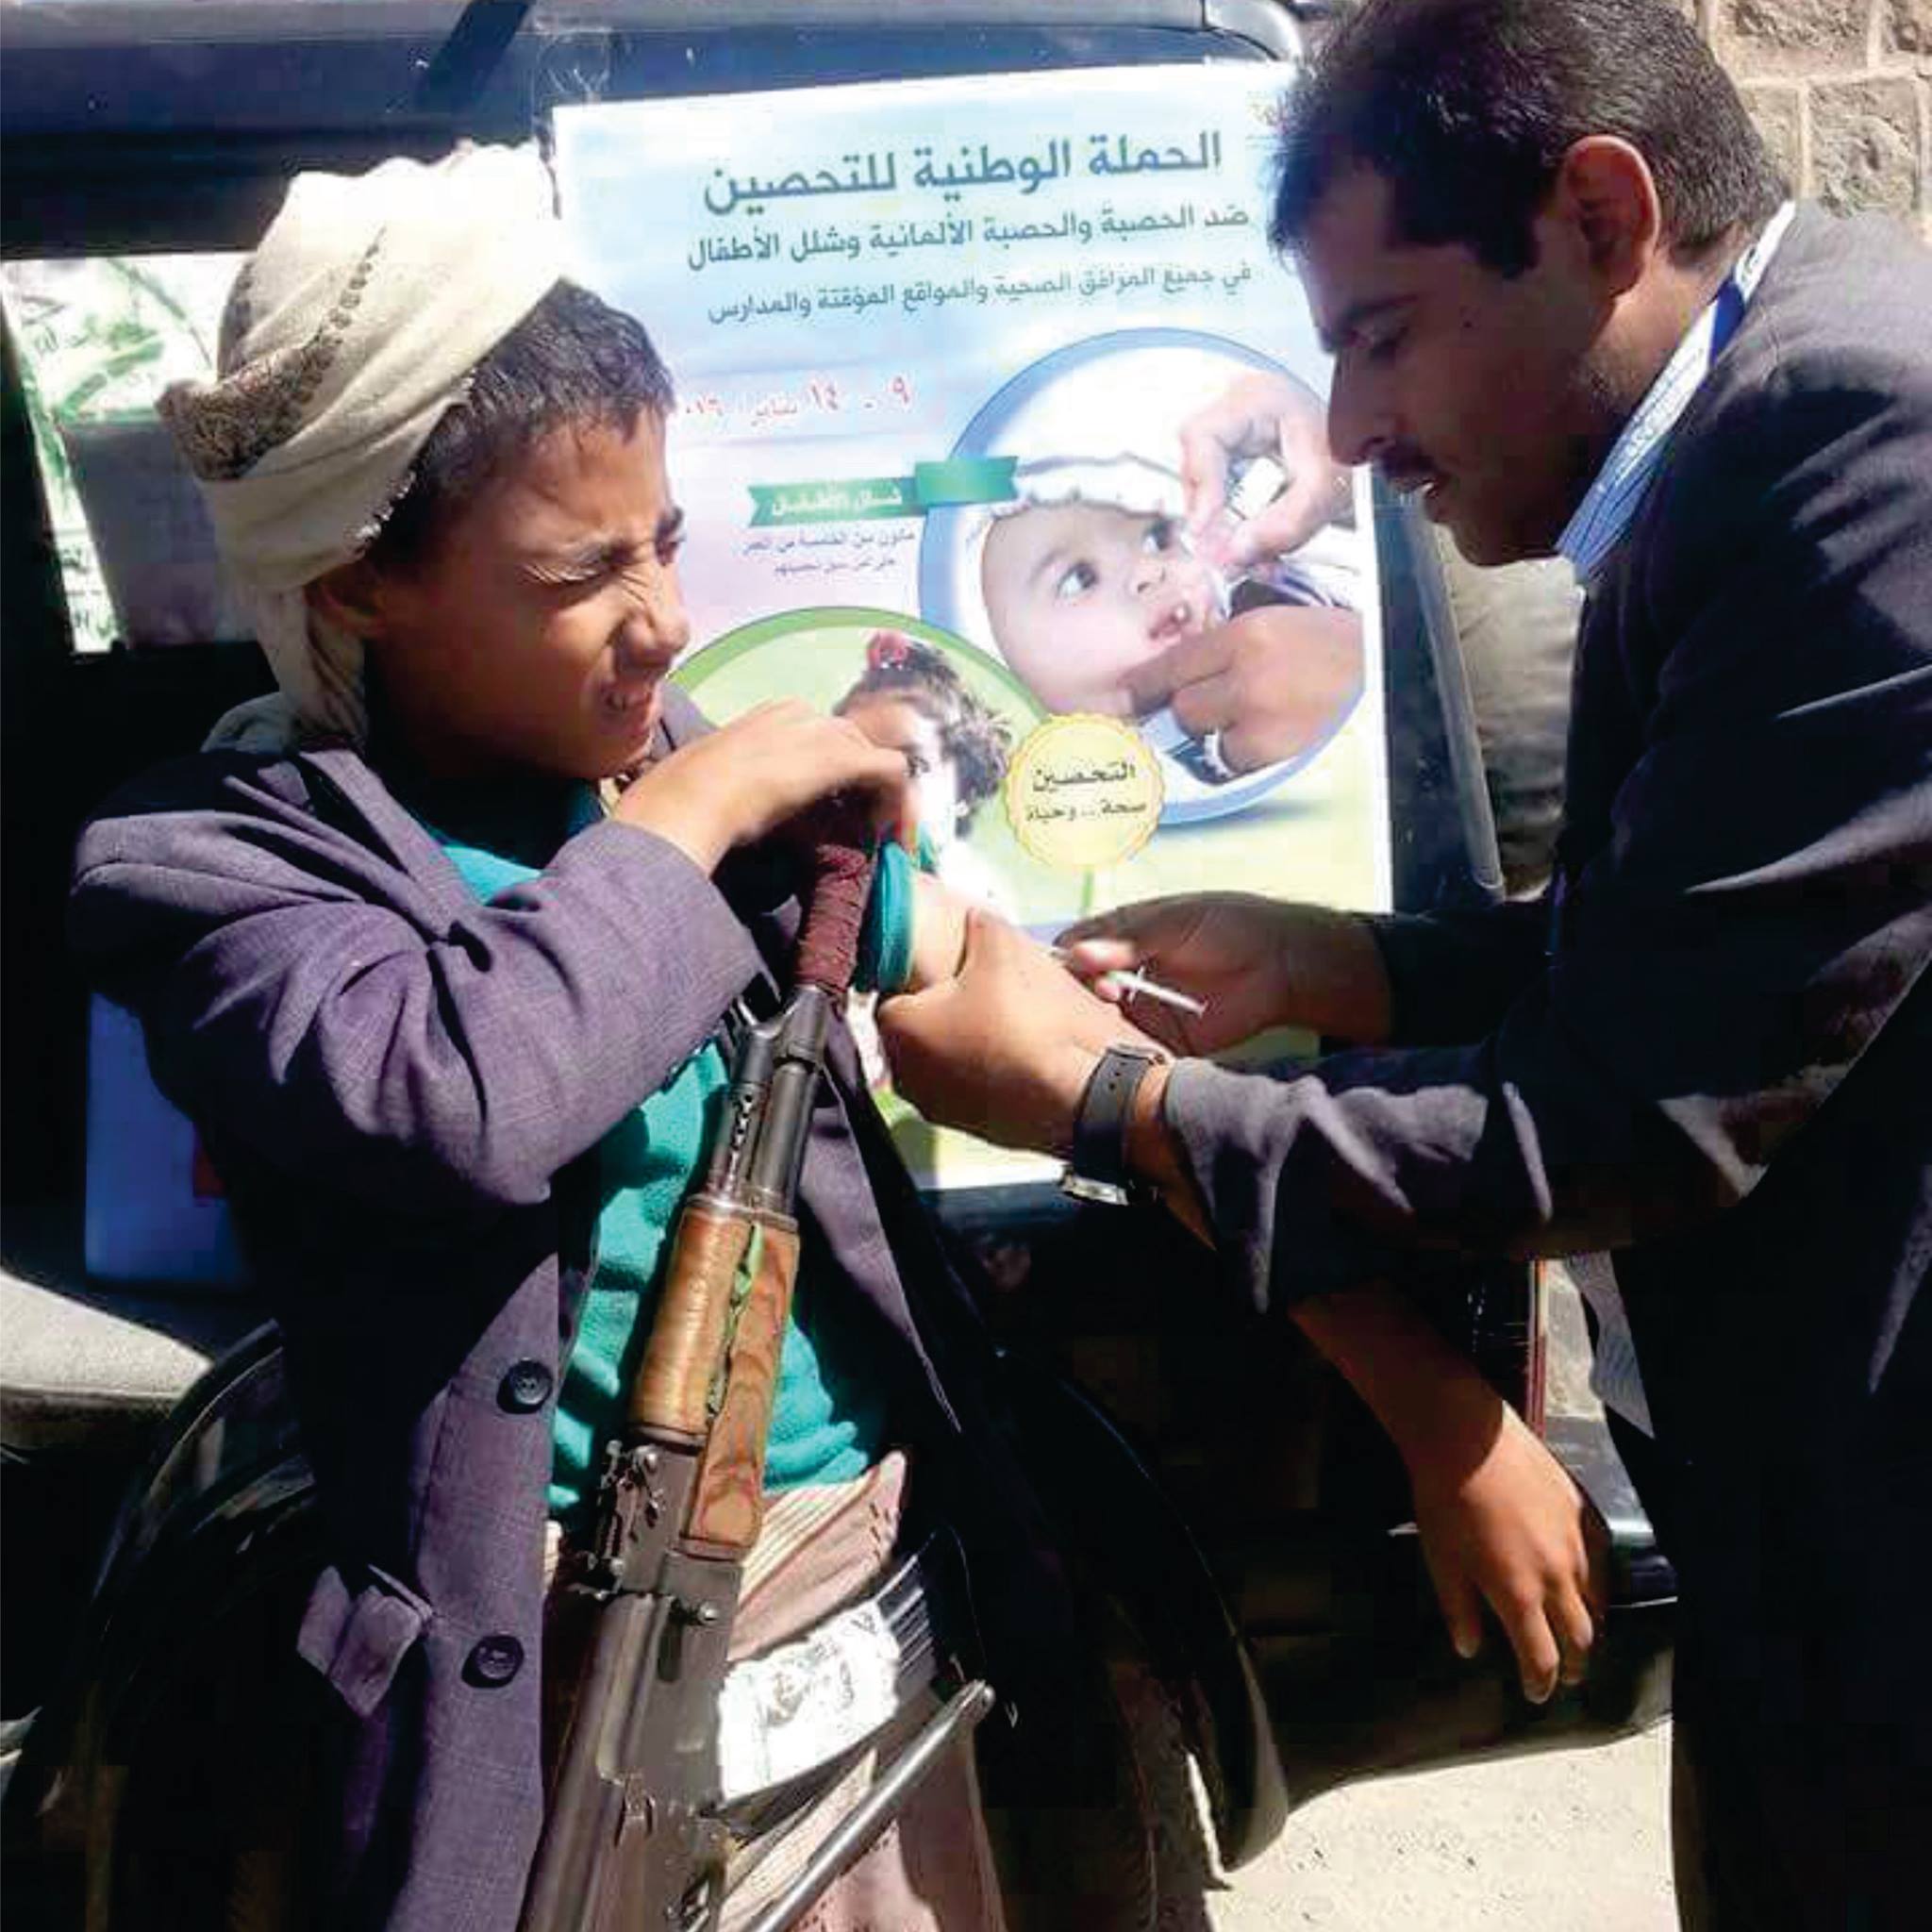 صورة «طفل حوثي» الأكثر شهرة وتداولاً اليوم في اليمن